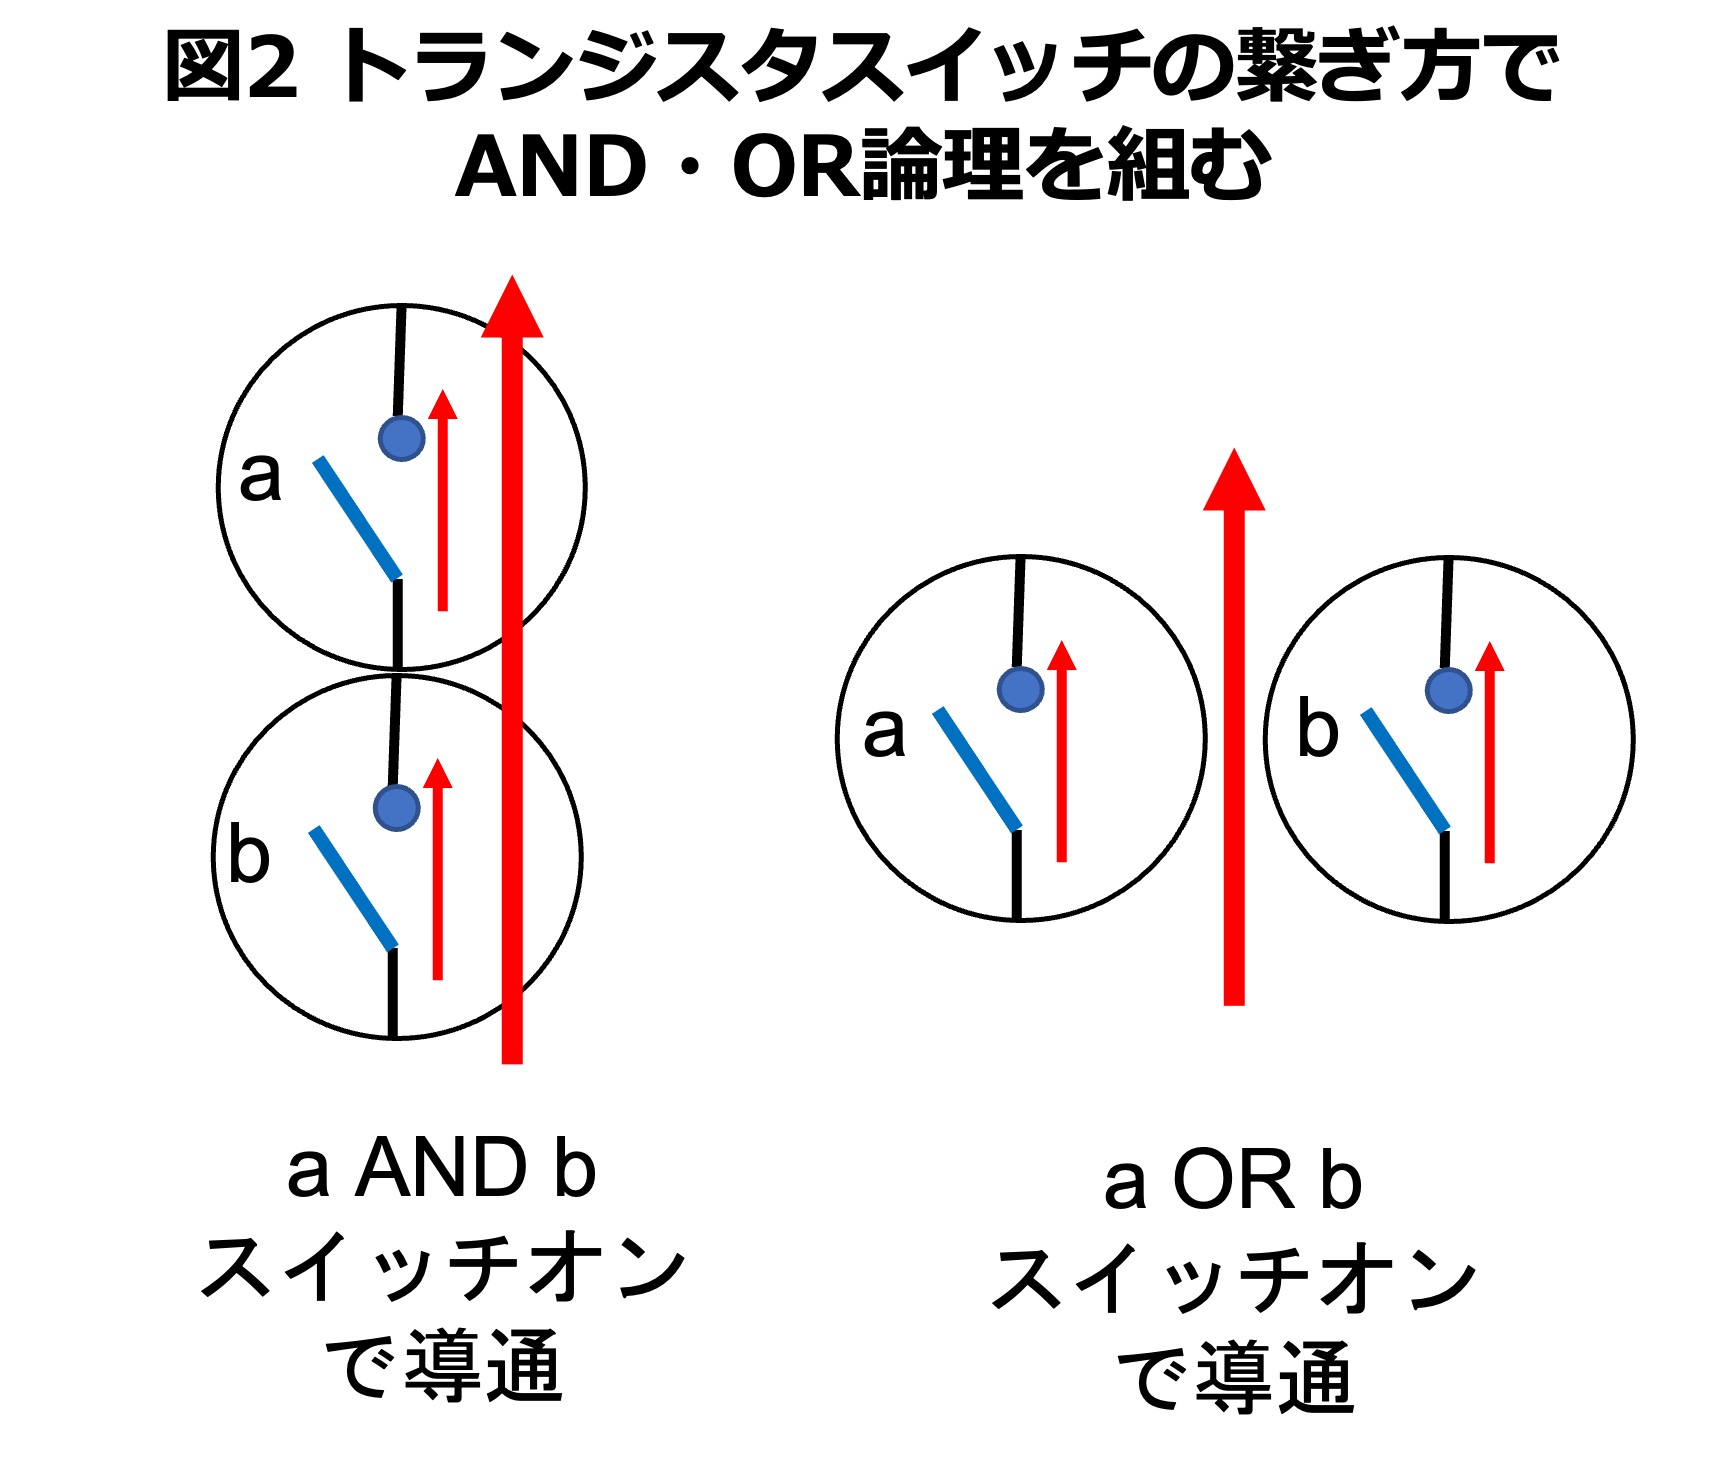 図2 トランジスタスイッチの繋ぎ方